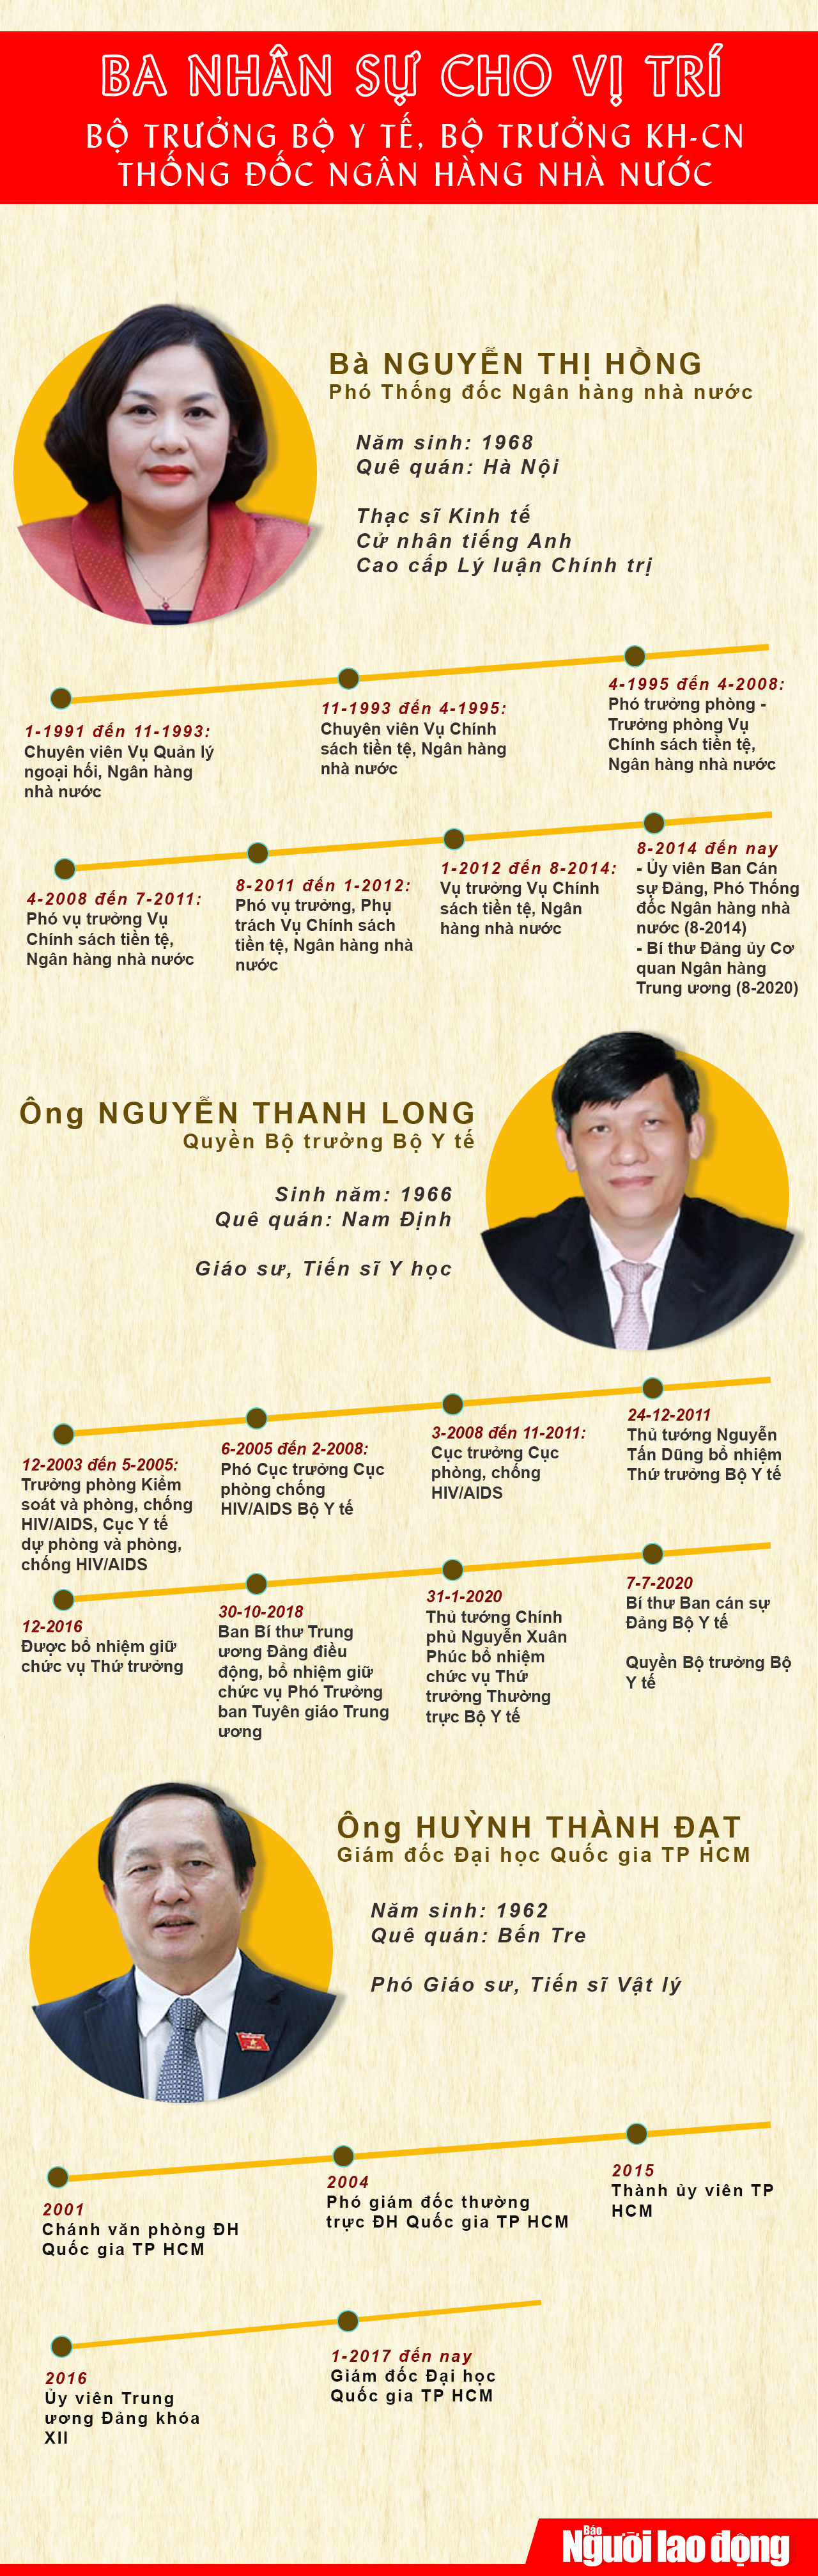 [Infographic] Ba nhân sự cho vị trí Thống đốc NHNN, Bộ trưởng Y tế, Bộ trưởng KH-CN - Ảnh 1.